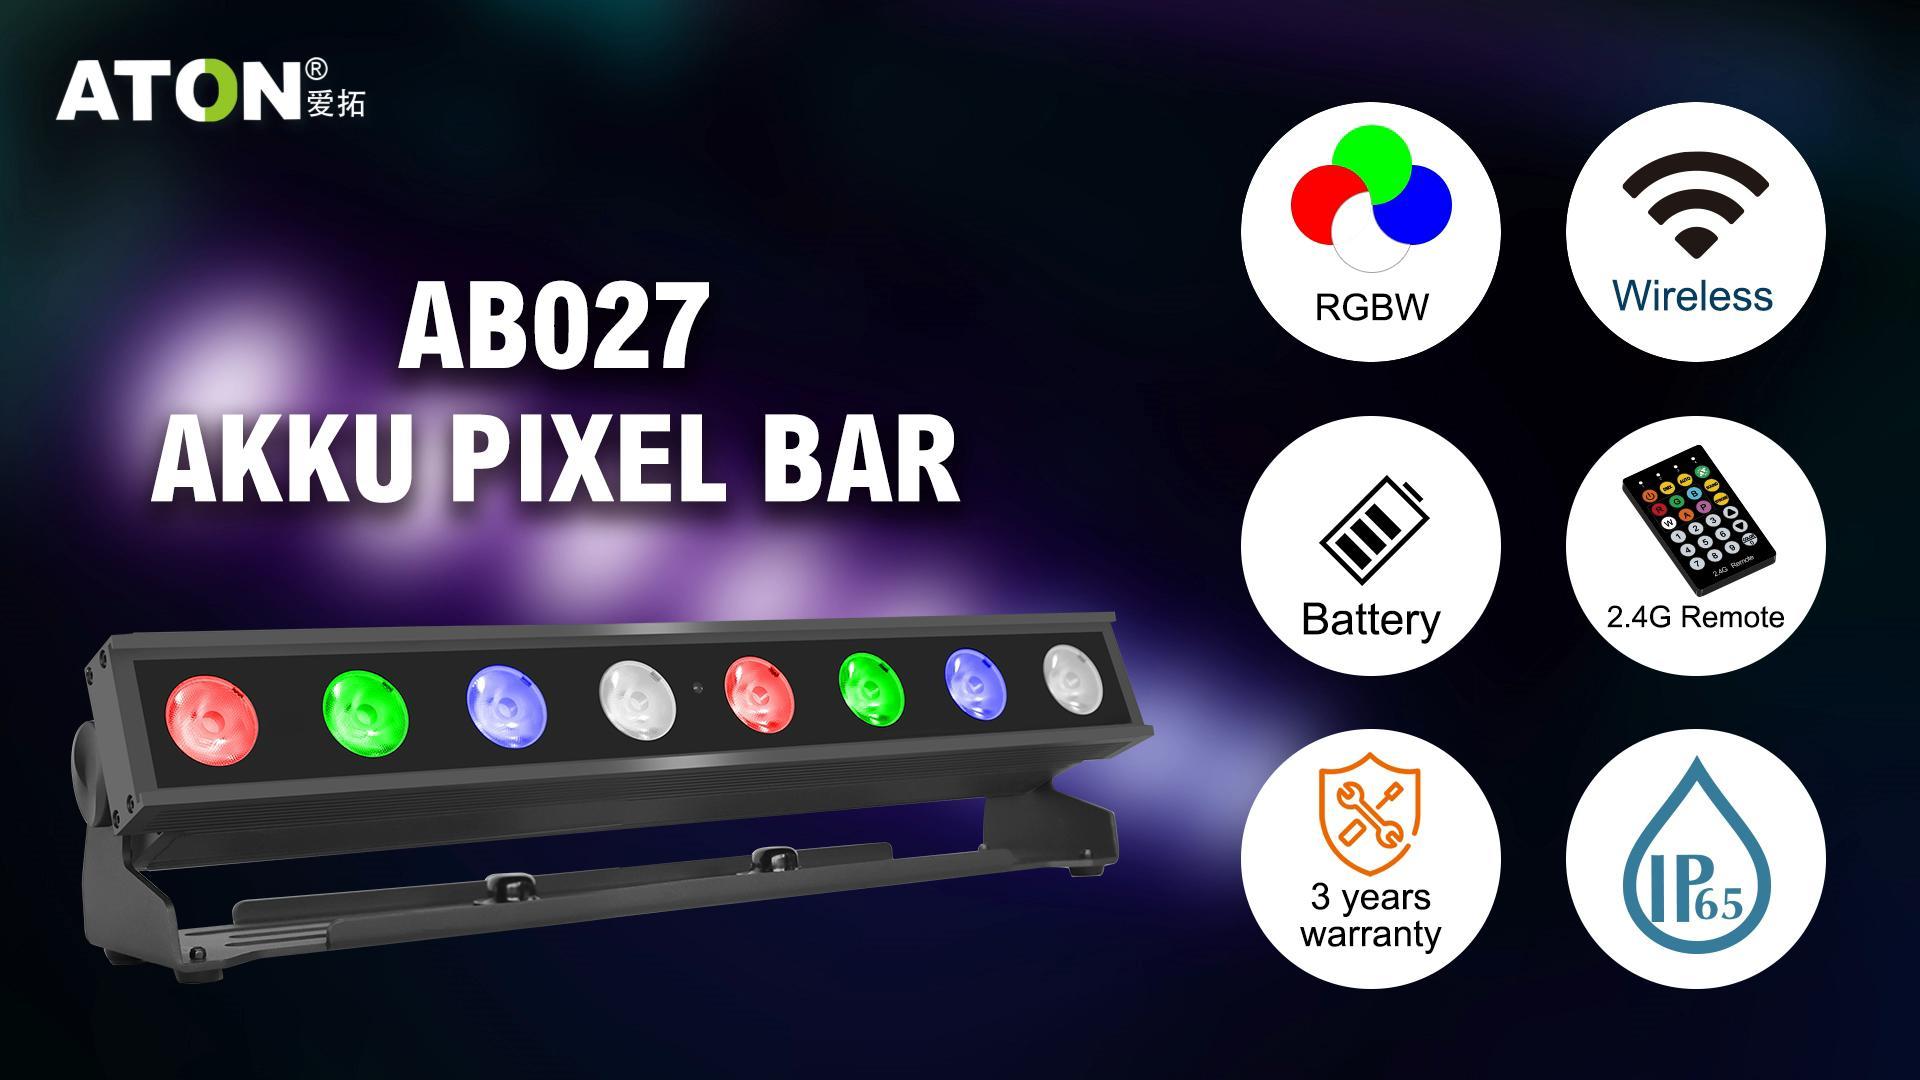 Akku pixel bar 8*10W 4 in 1 RGBW LEDs